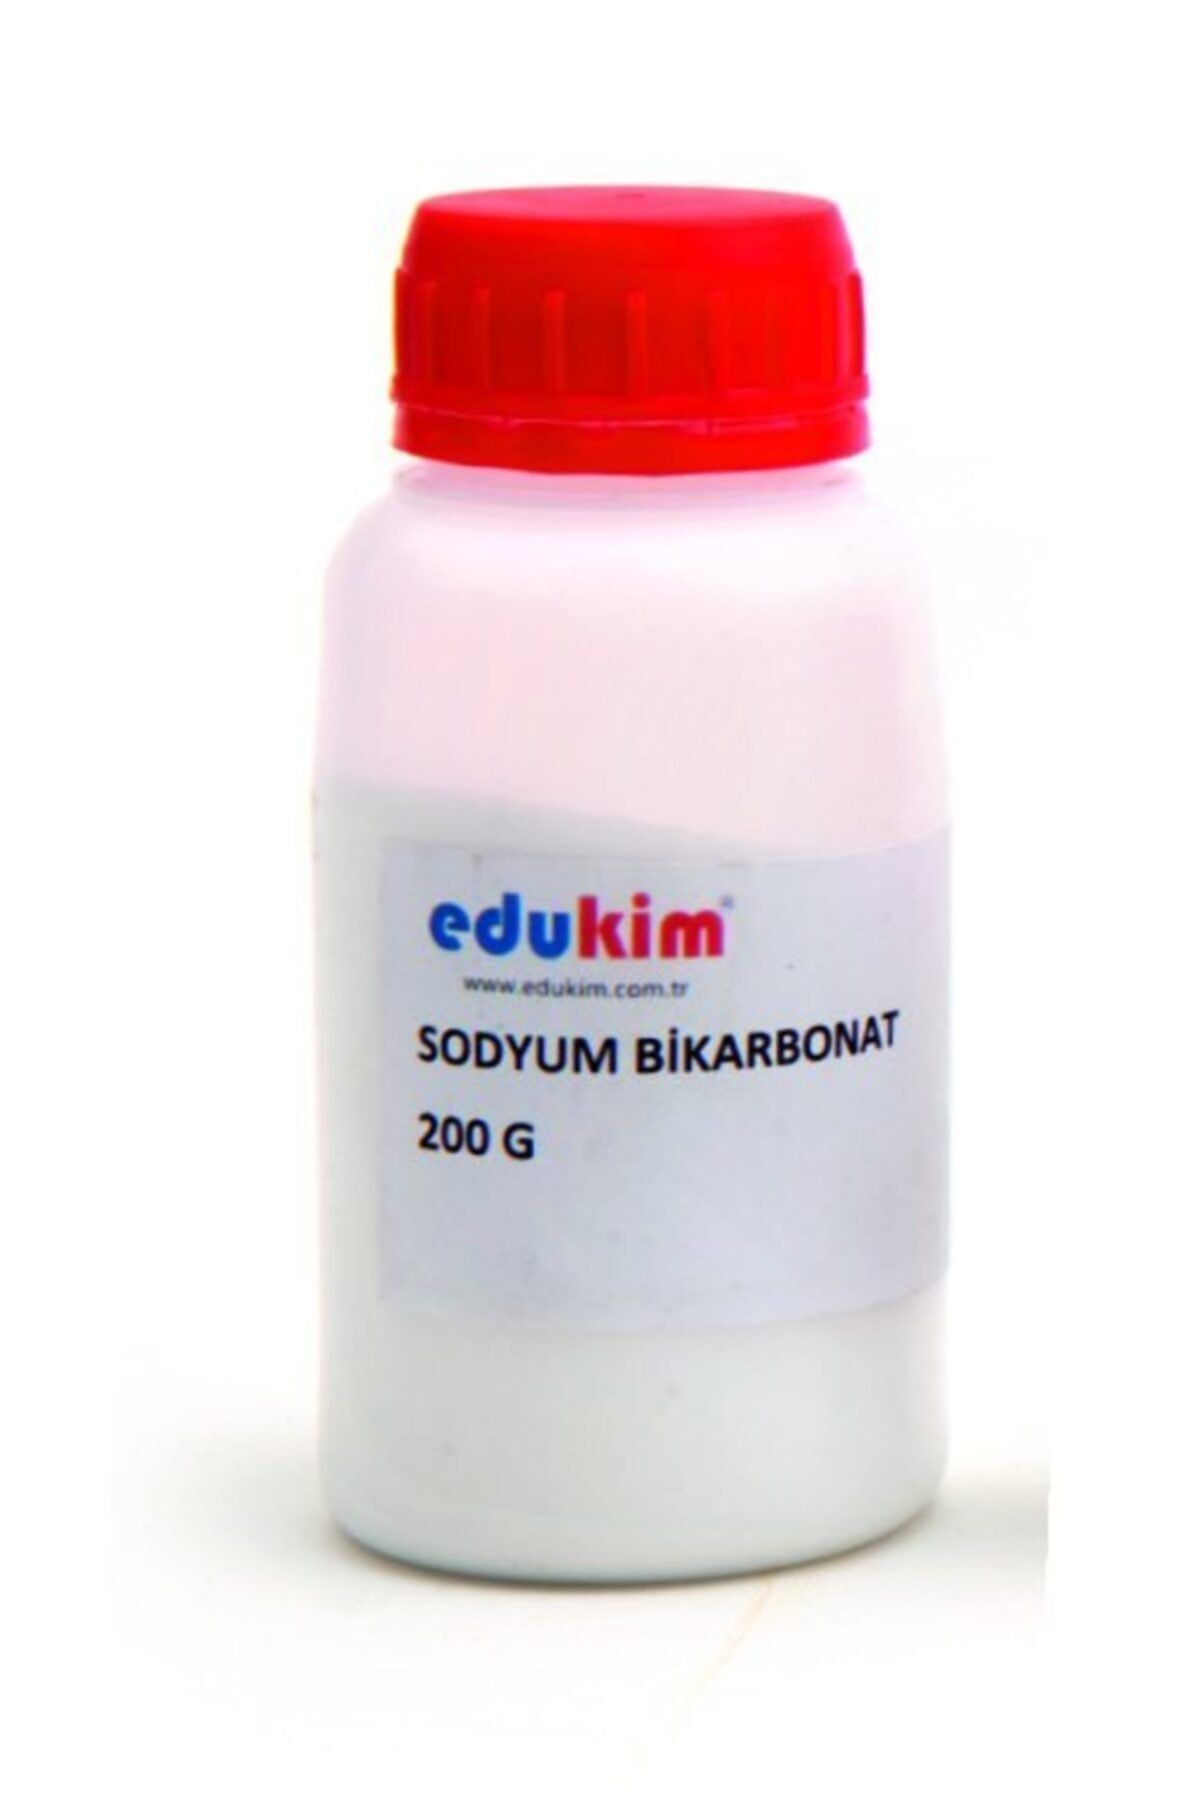 Edukim Sodyum Bikarbonat (200 G KATI, SAF)